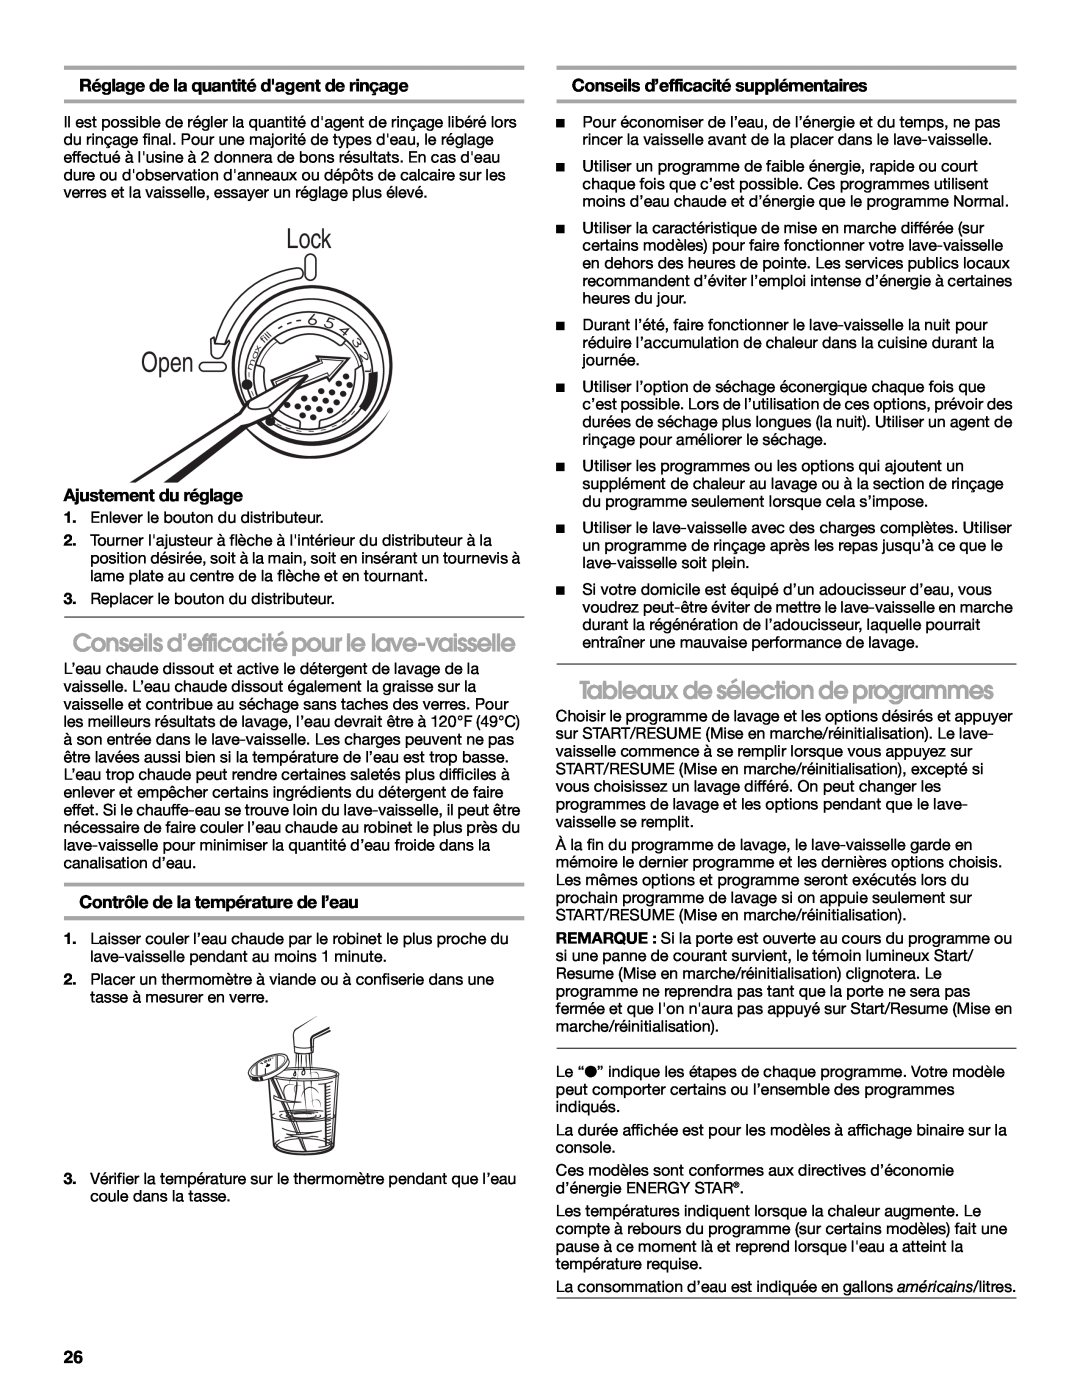 Whirlpool IUD8000R manual Conseils d’efficacité pour le lave-vaisselle, Tableaux de sélection de programmes, fill, Open 